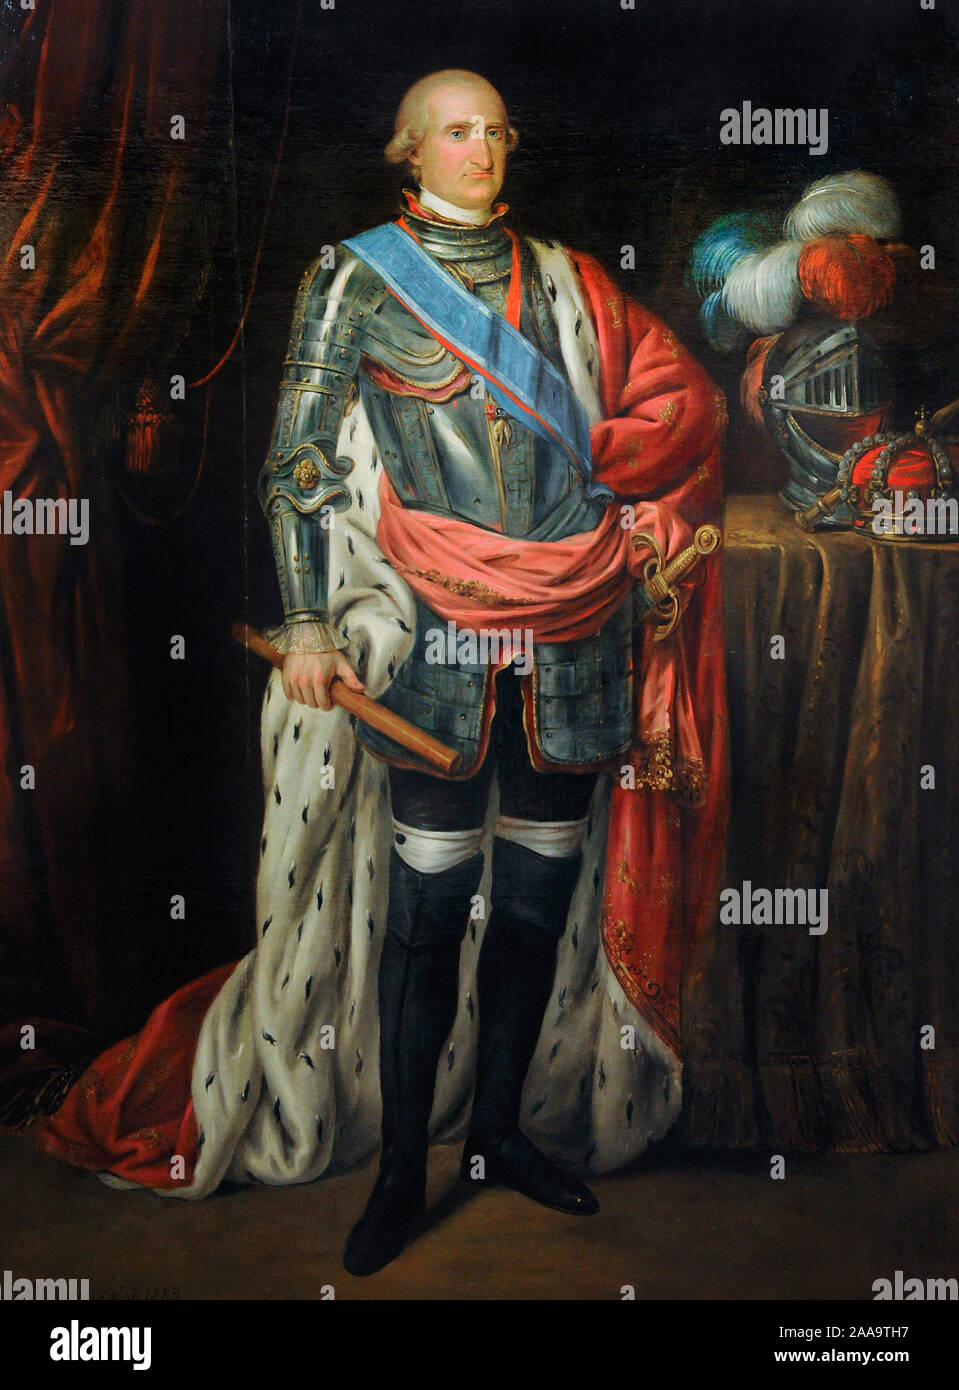 Charles IV (1748-1819). Roi d'Espagne (1788-1808). Charles IV en armure, 1789. Portrait par Antonio Carnicero (1748-1814). Musée d'histoire. Madrid. L'Espagne. Banque D'Images